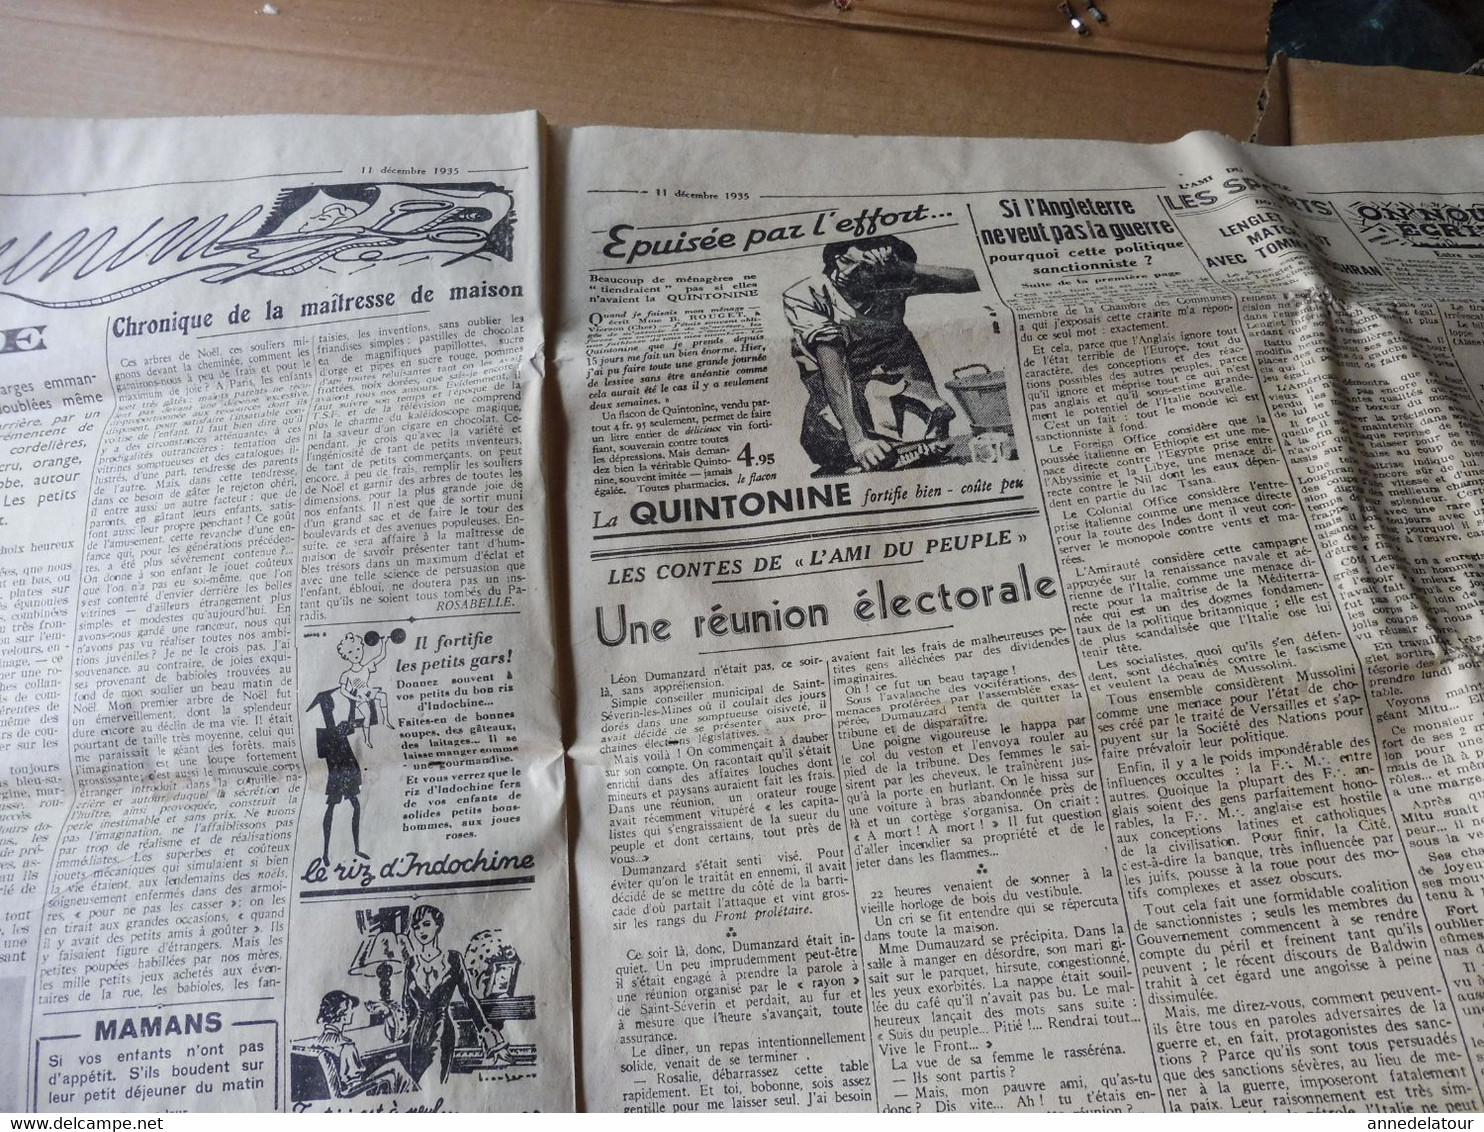 1935 L'AMI DU PEUPLE : Croix de Feu et Jeunesses Patriotes ; Publicité --> Avec KRUCHEN au pays de la santé ; etc